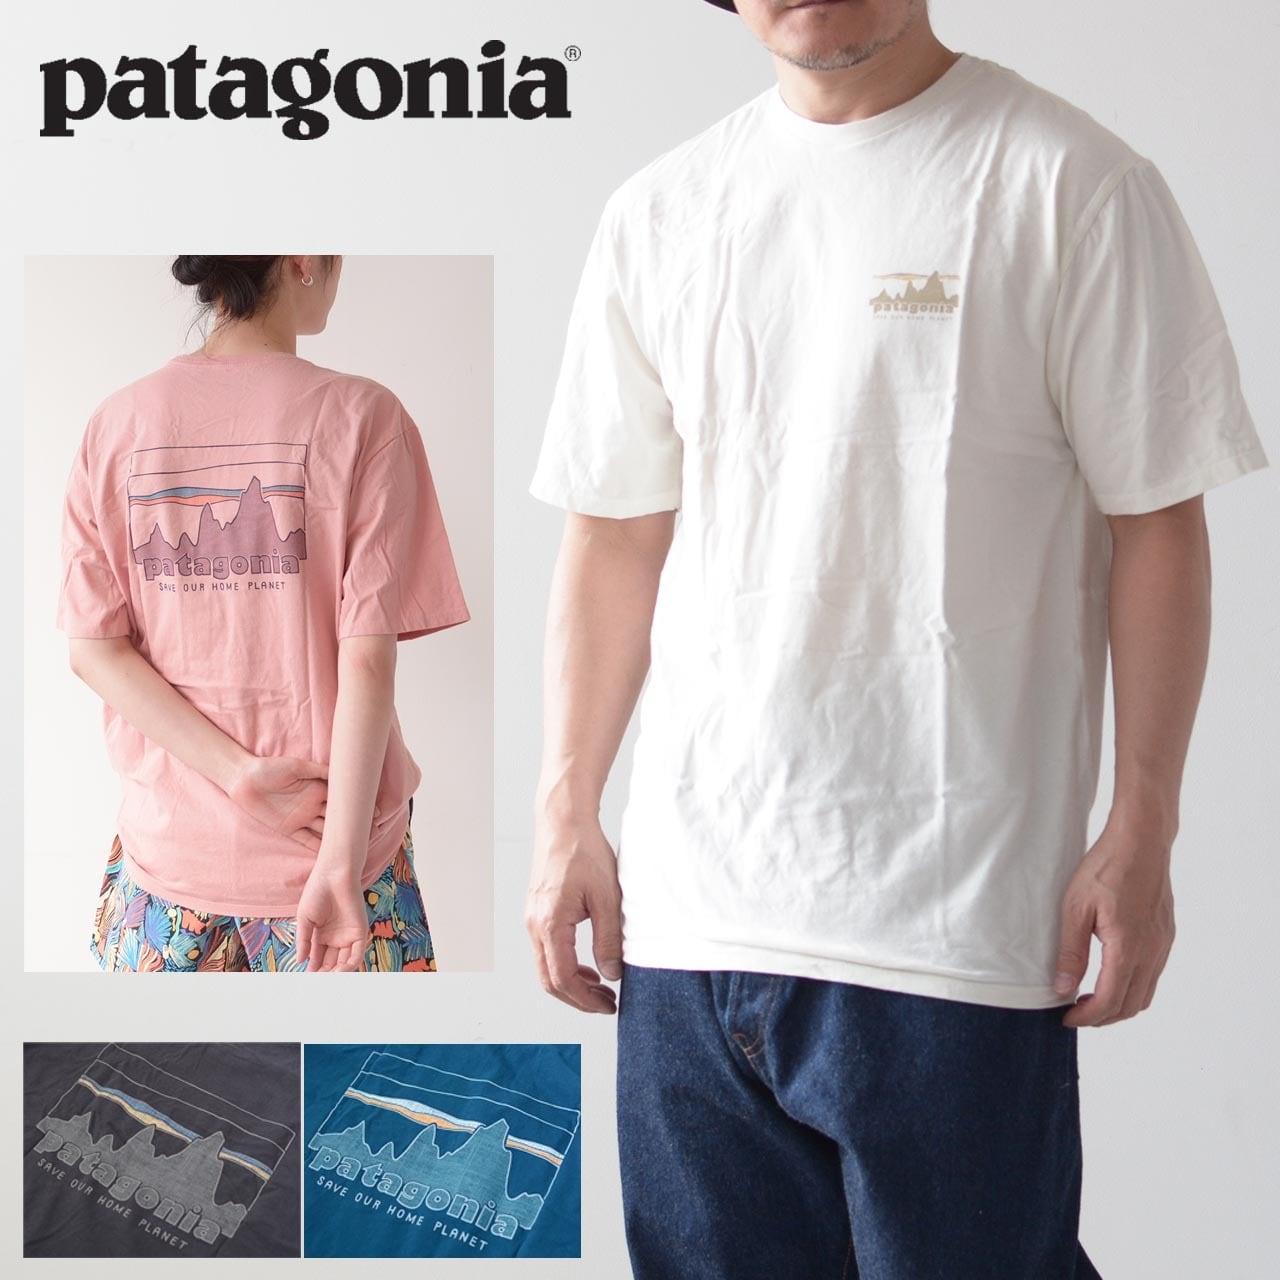 patagoniaメンズ・'73 スカイライン・オーガニック・Tシャツ